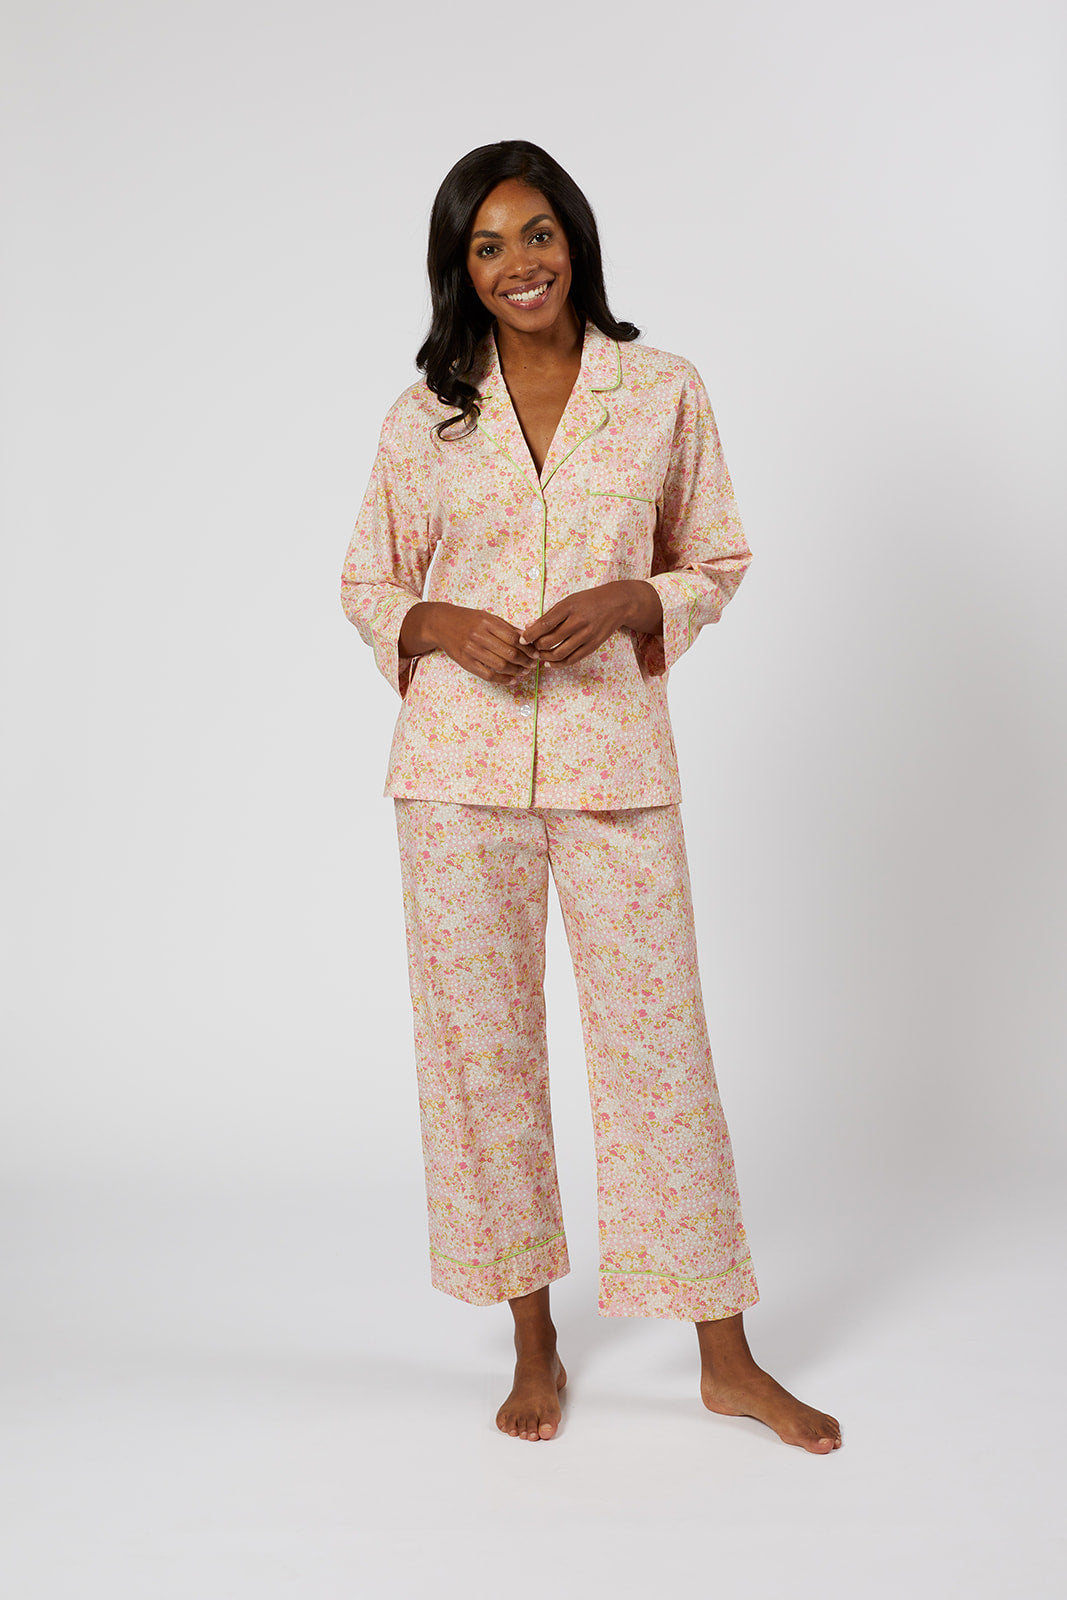  CafePress Retro Louisville Skyline Pajamas Pajama Set :  Clothing, Shoes & Jewelry